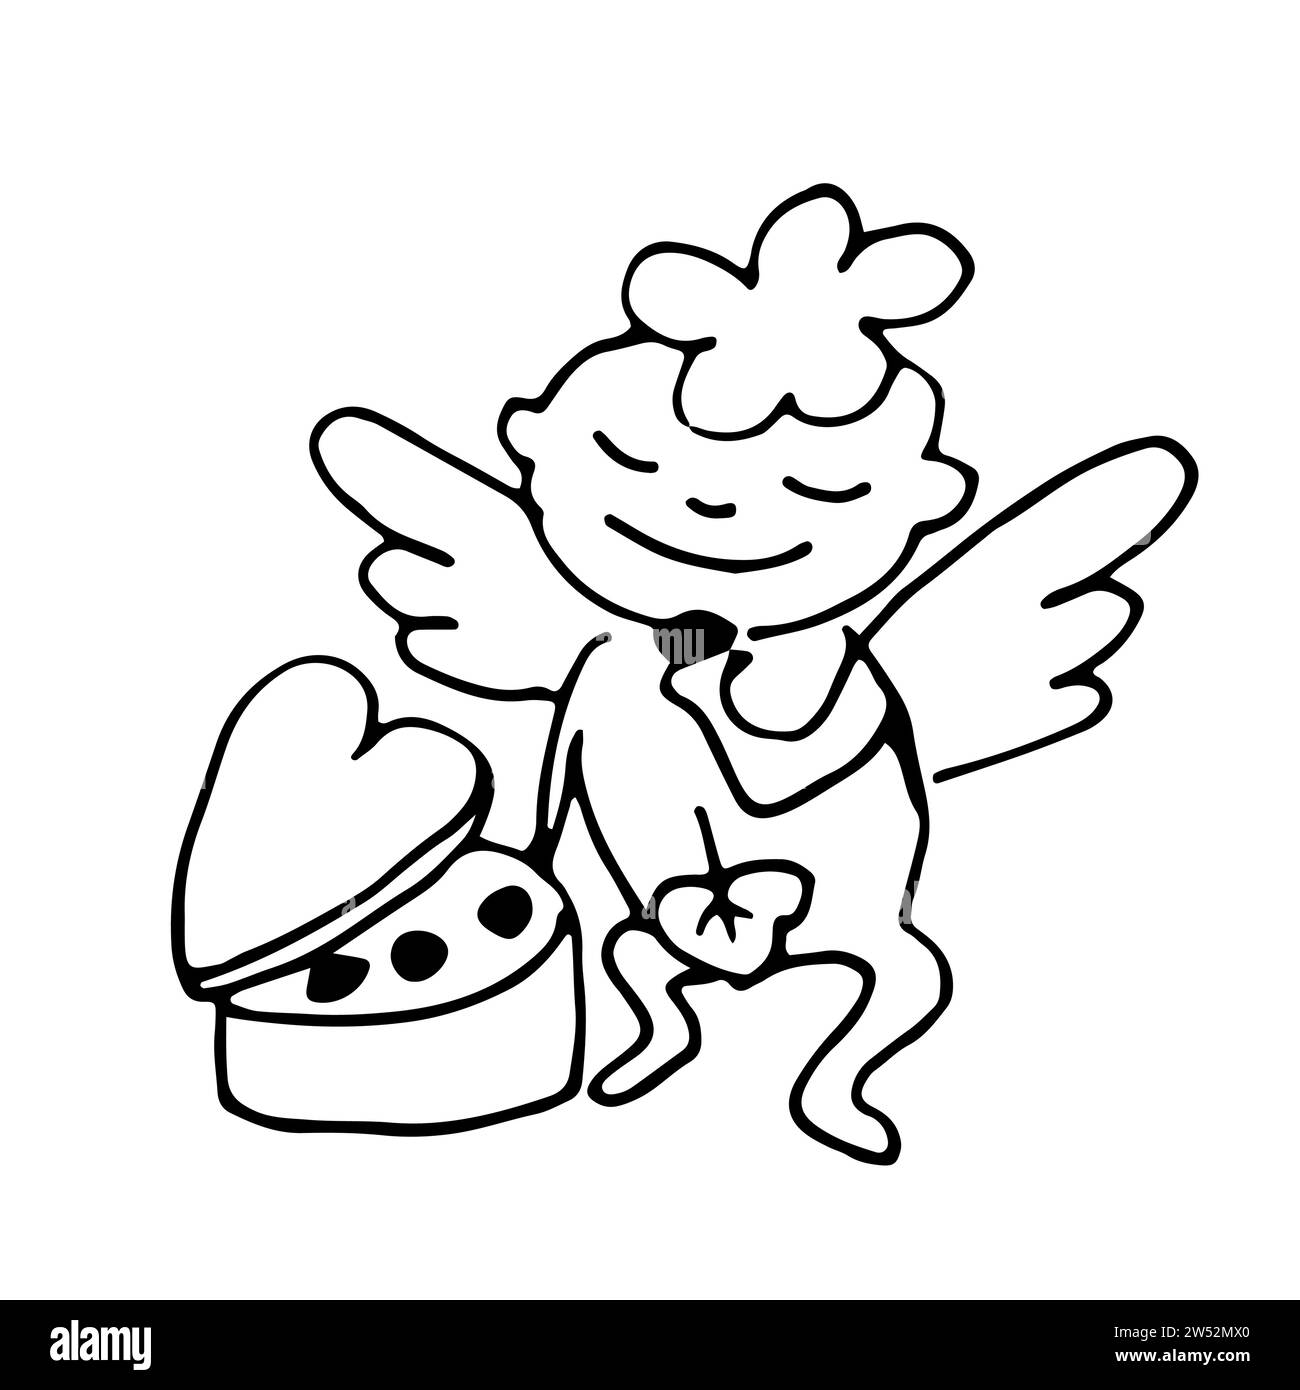 Doodle Little Cupid sitzt vor einer herzförmigen Schachtel Pralinen und isst sie. Isolierte humorvolle Illustration auf weißem Hintergrund für Valentinstag Stock Vektor